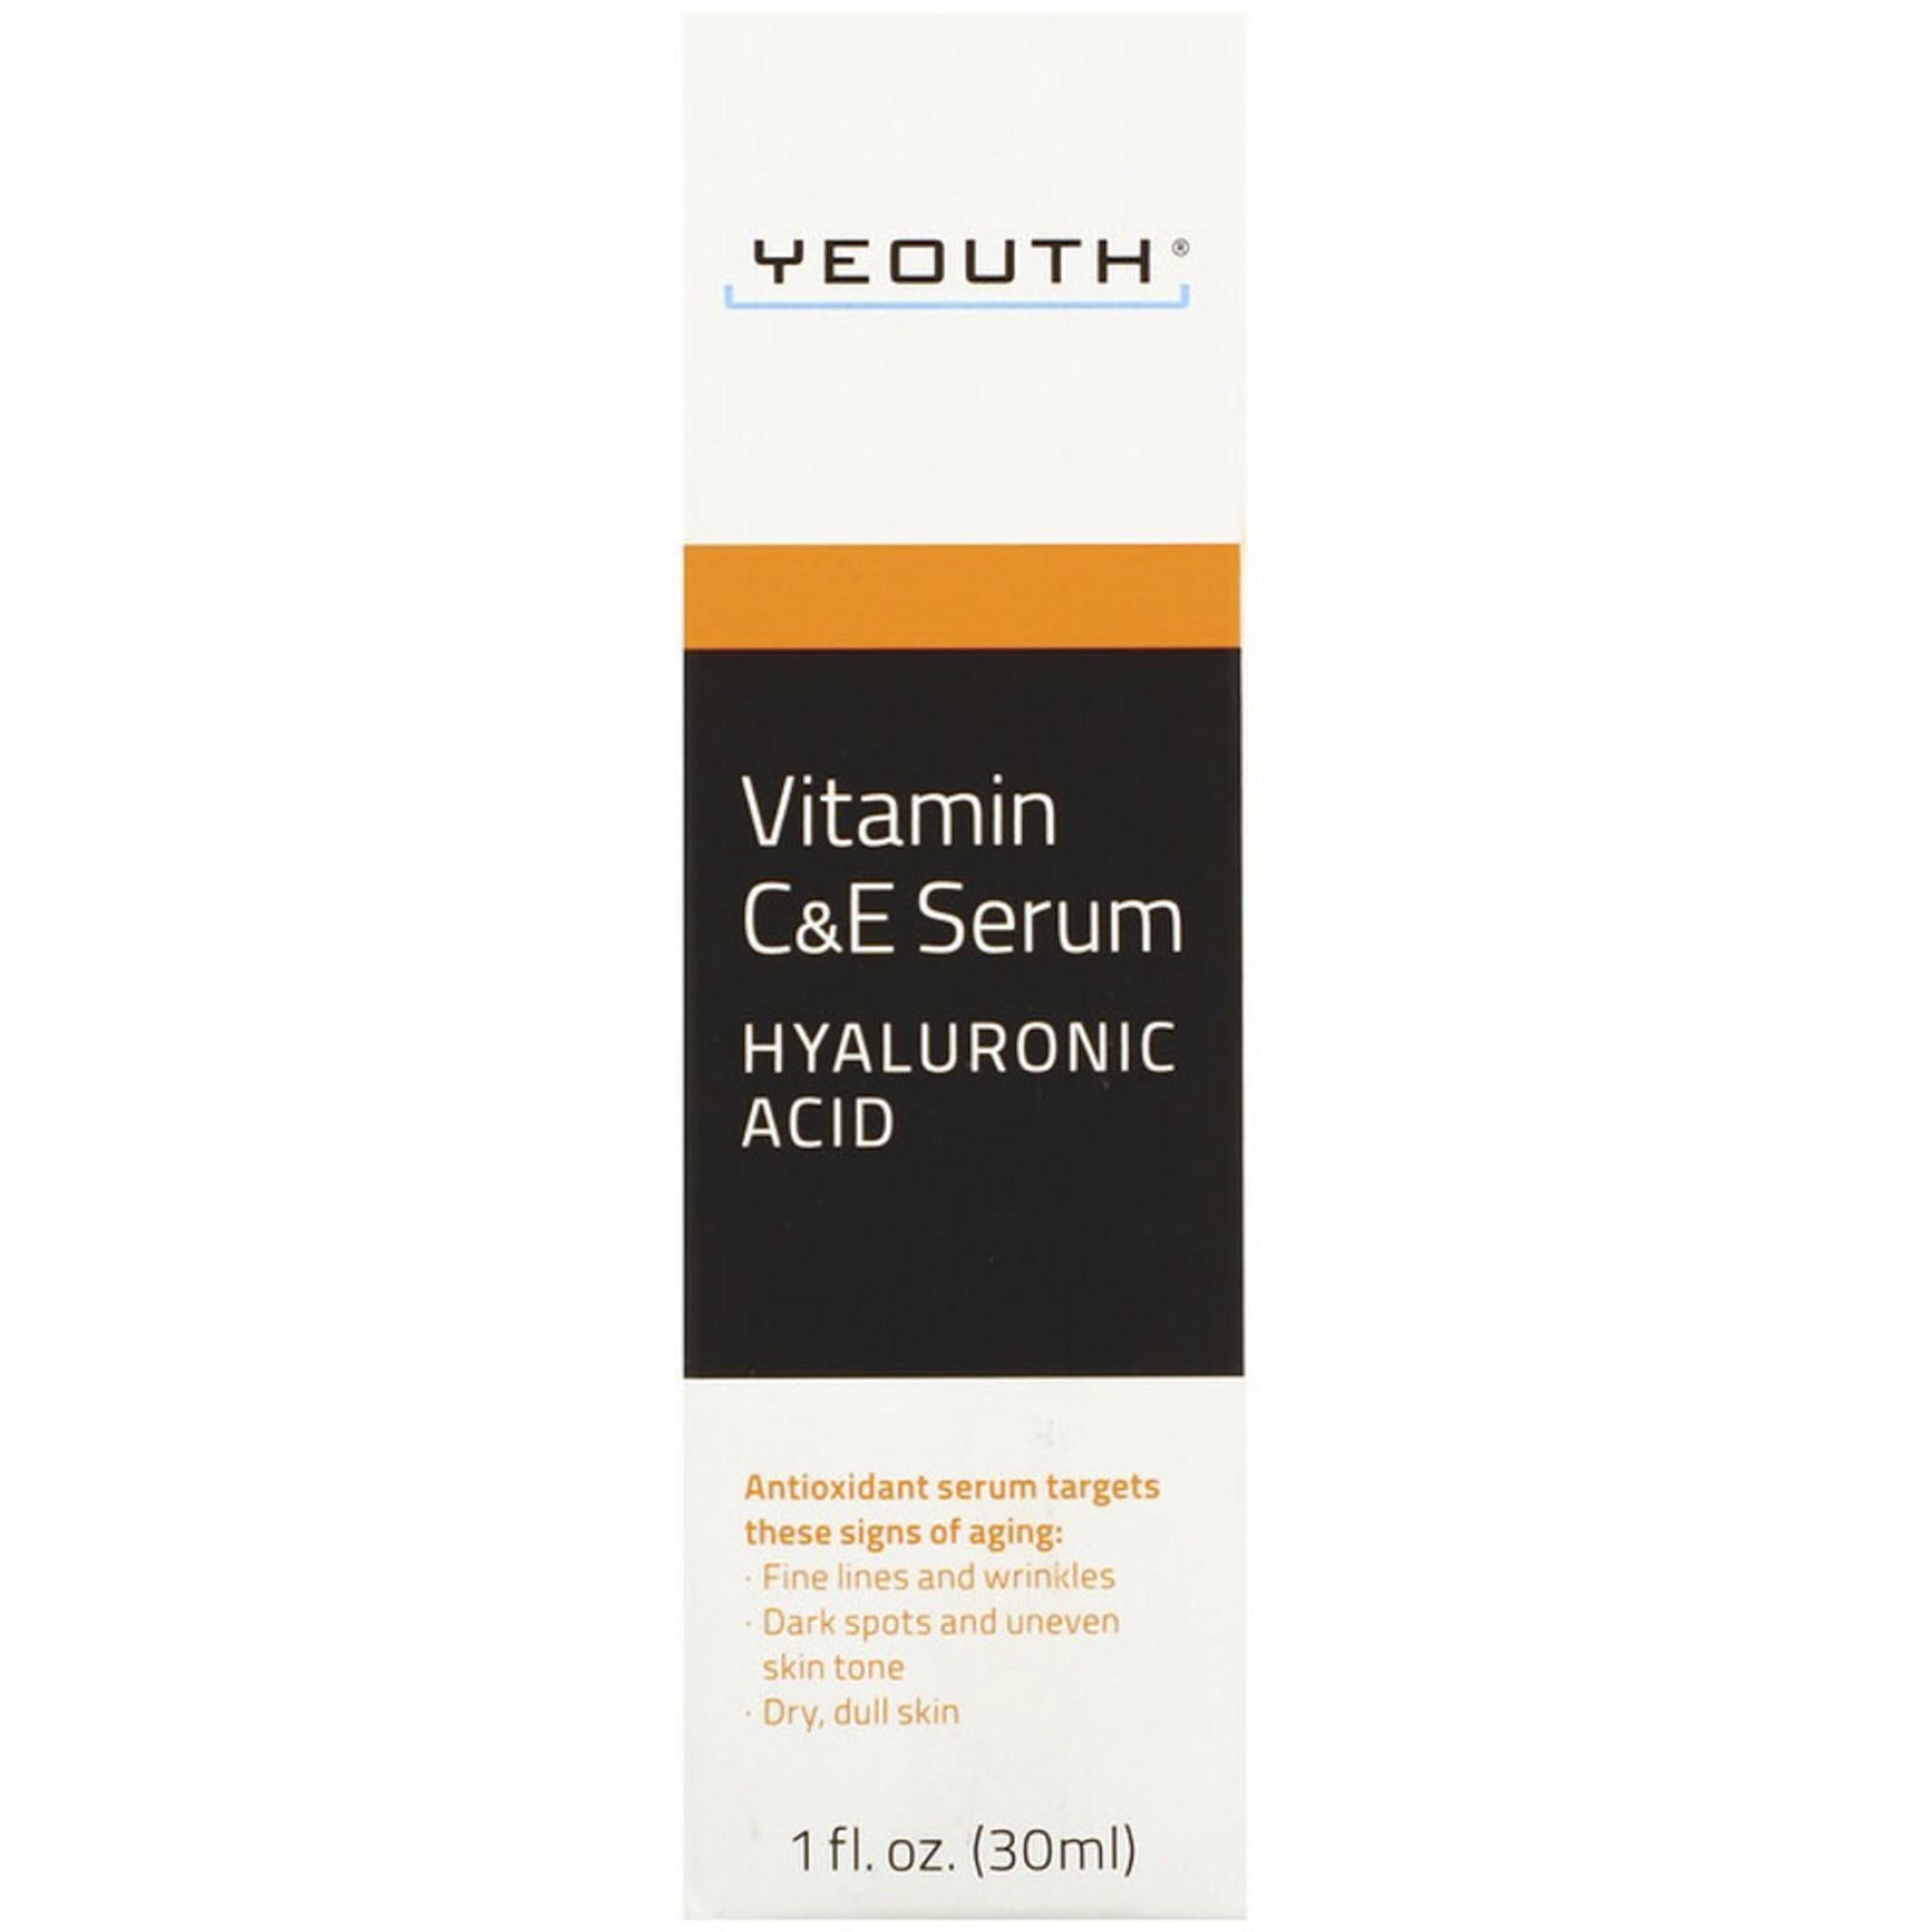 YEOUTH Vitamin C & E Serum